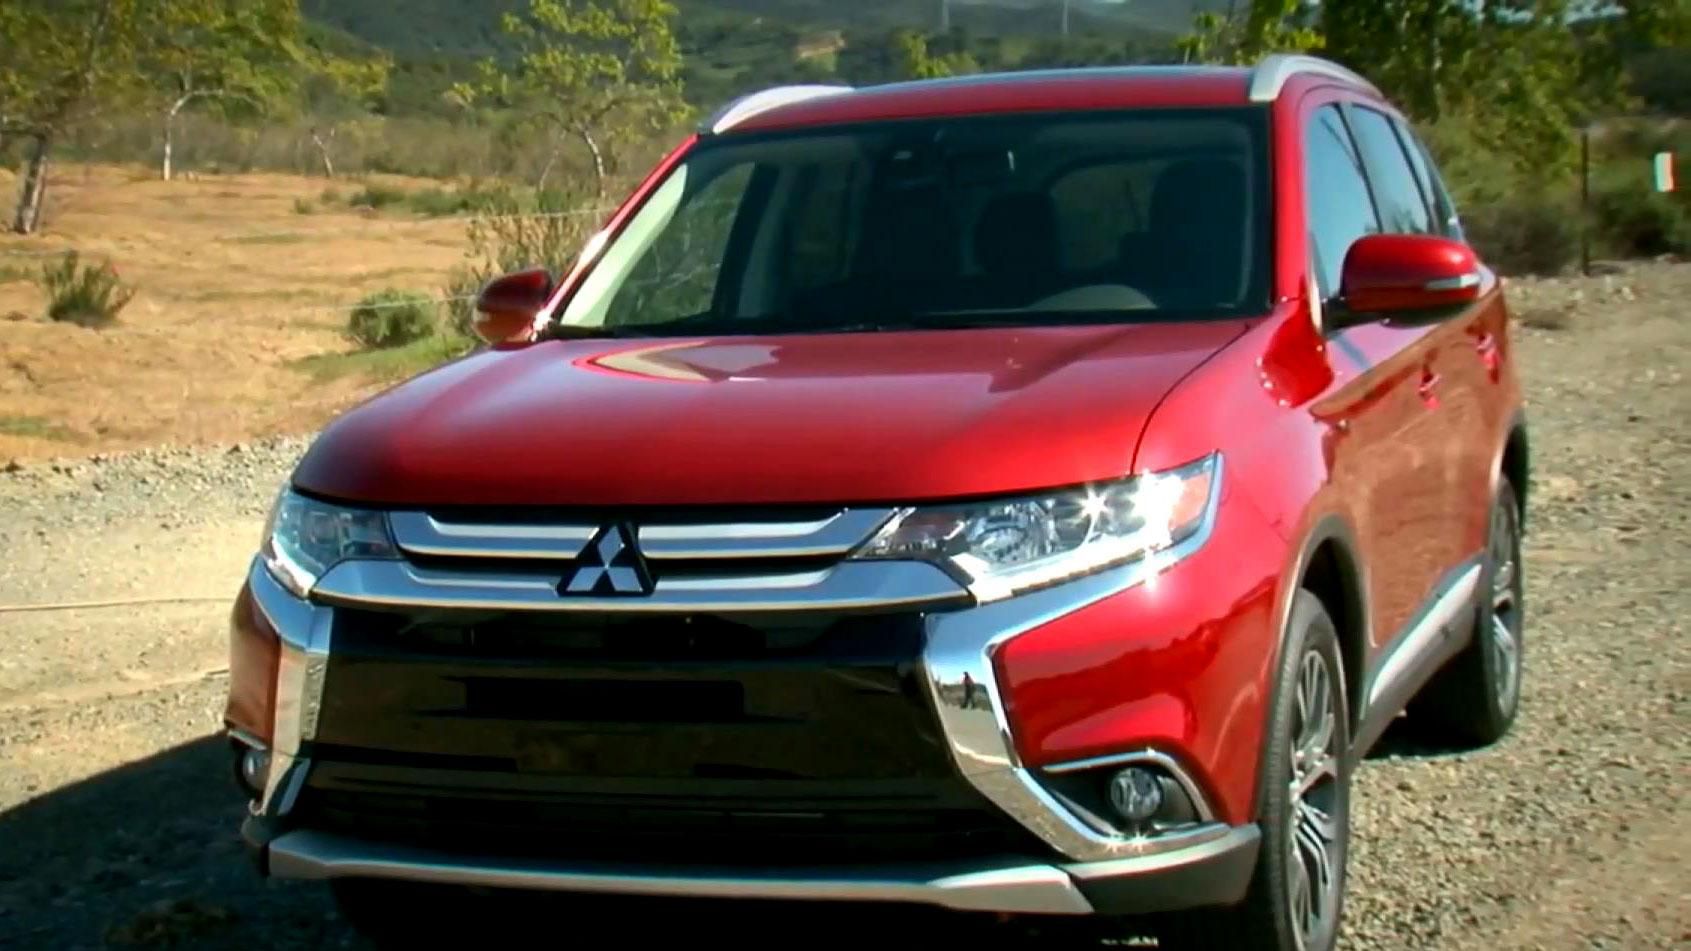 Автотехнологии. Продажи обновленного Mitsubishi Outlander стартуют в сентябре